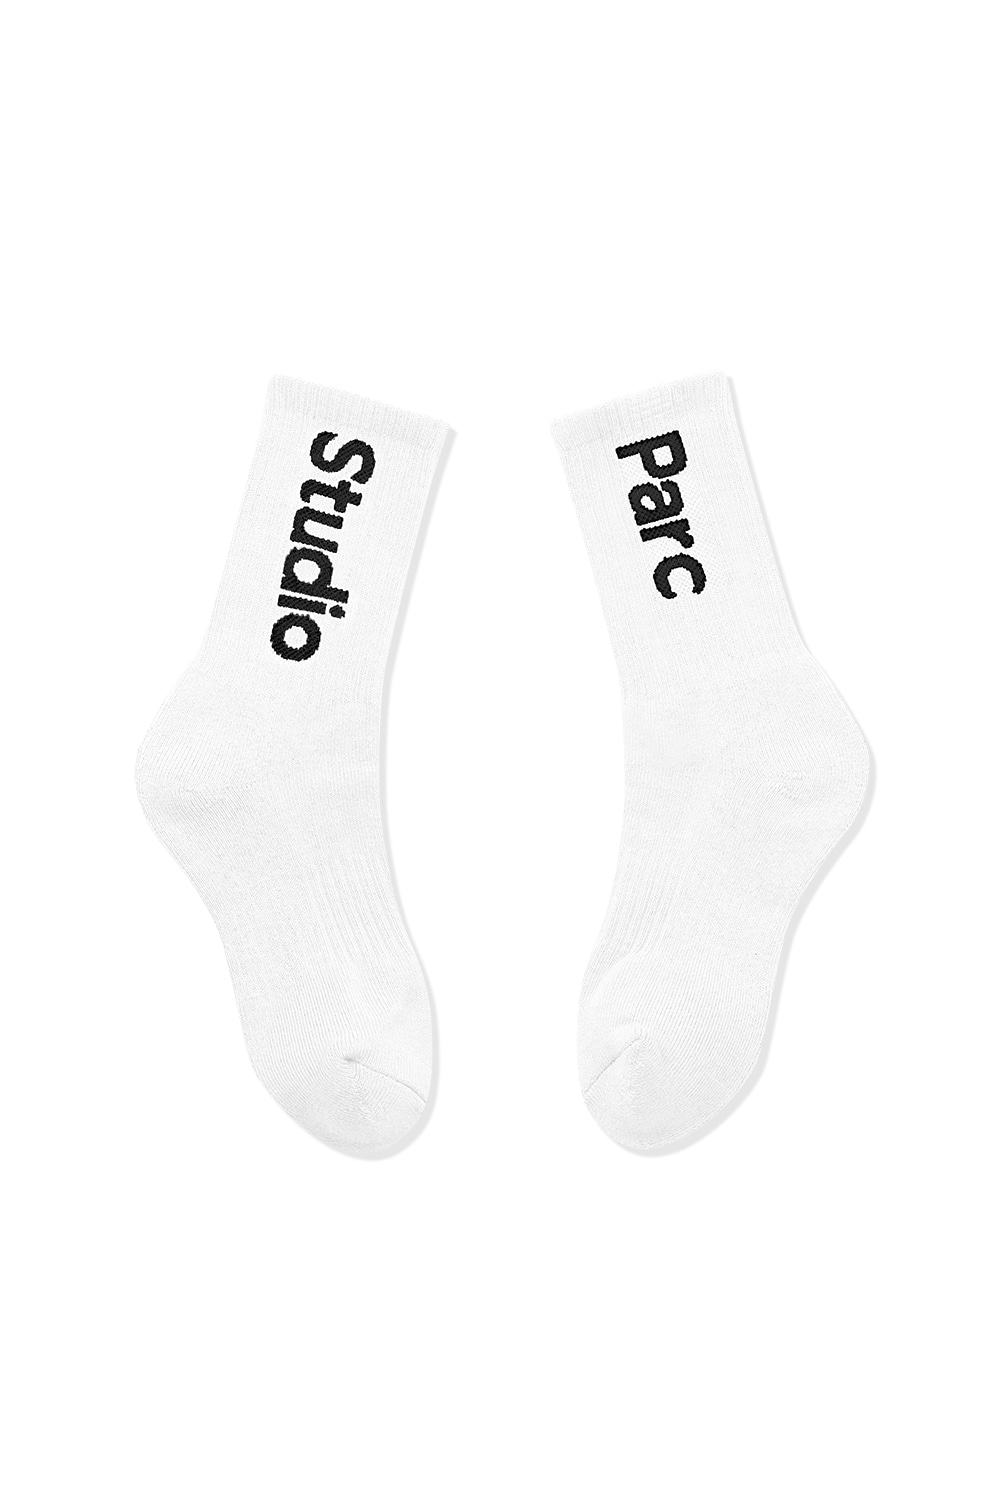 (UNI) Sceaux Socks 2_White